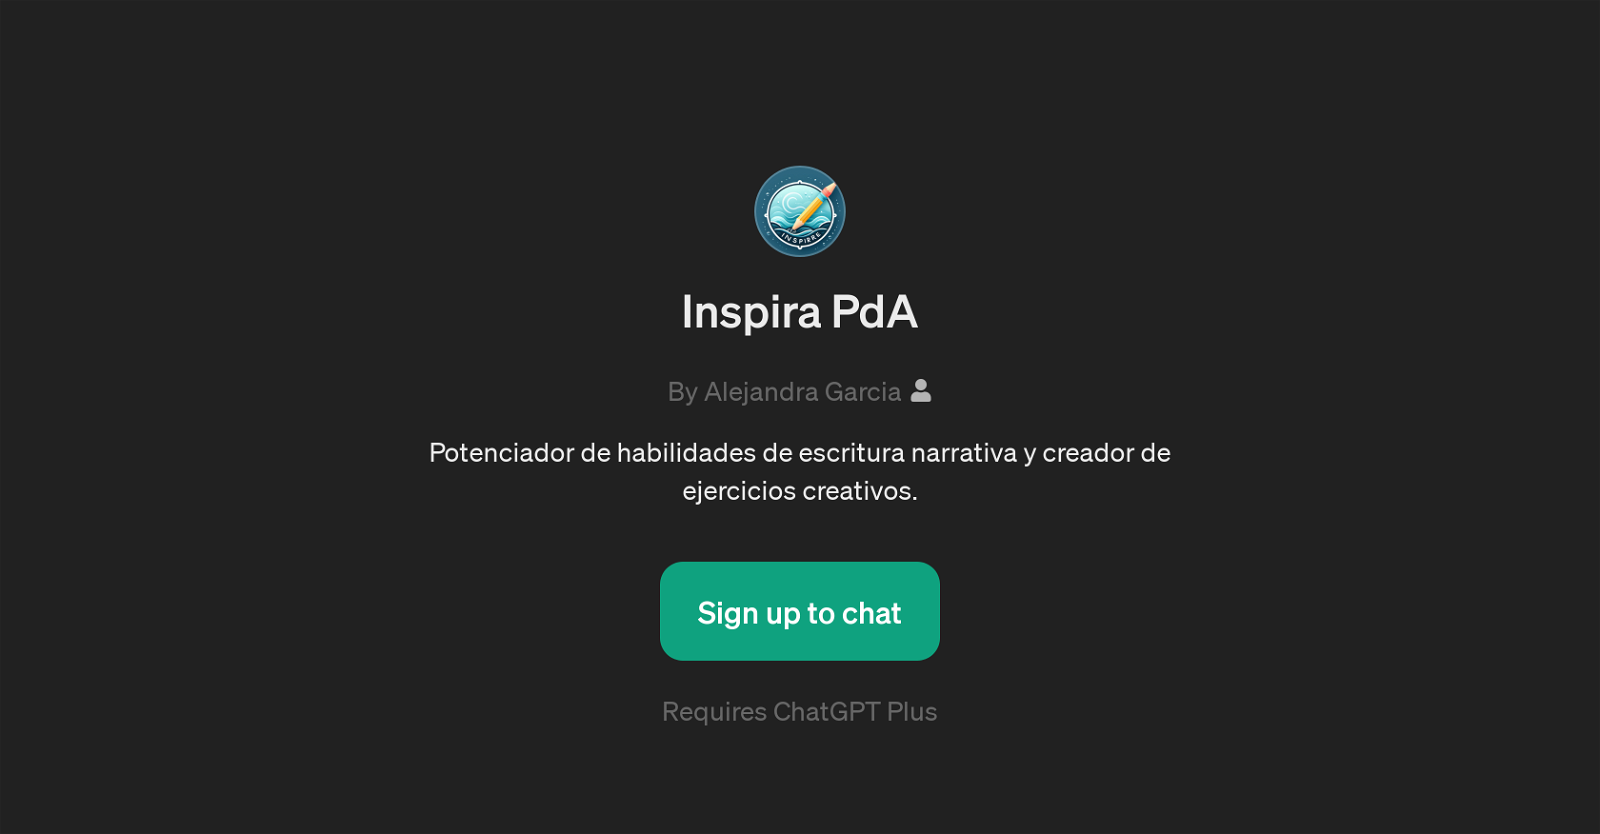 Inspira PdA website